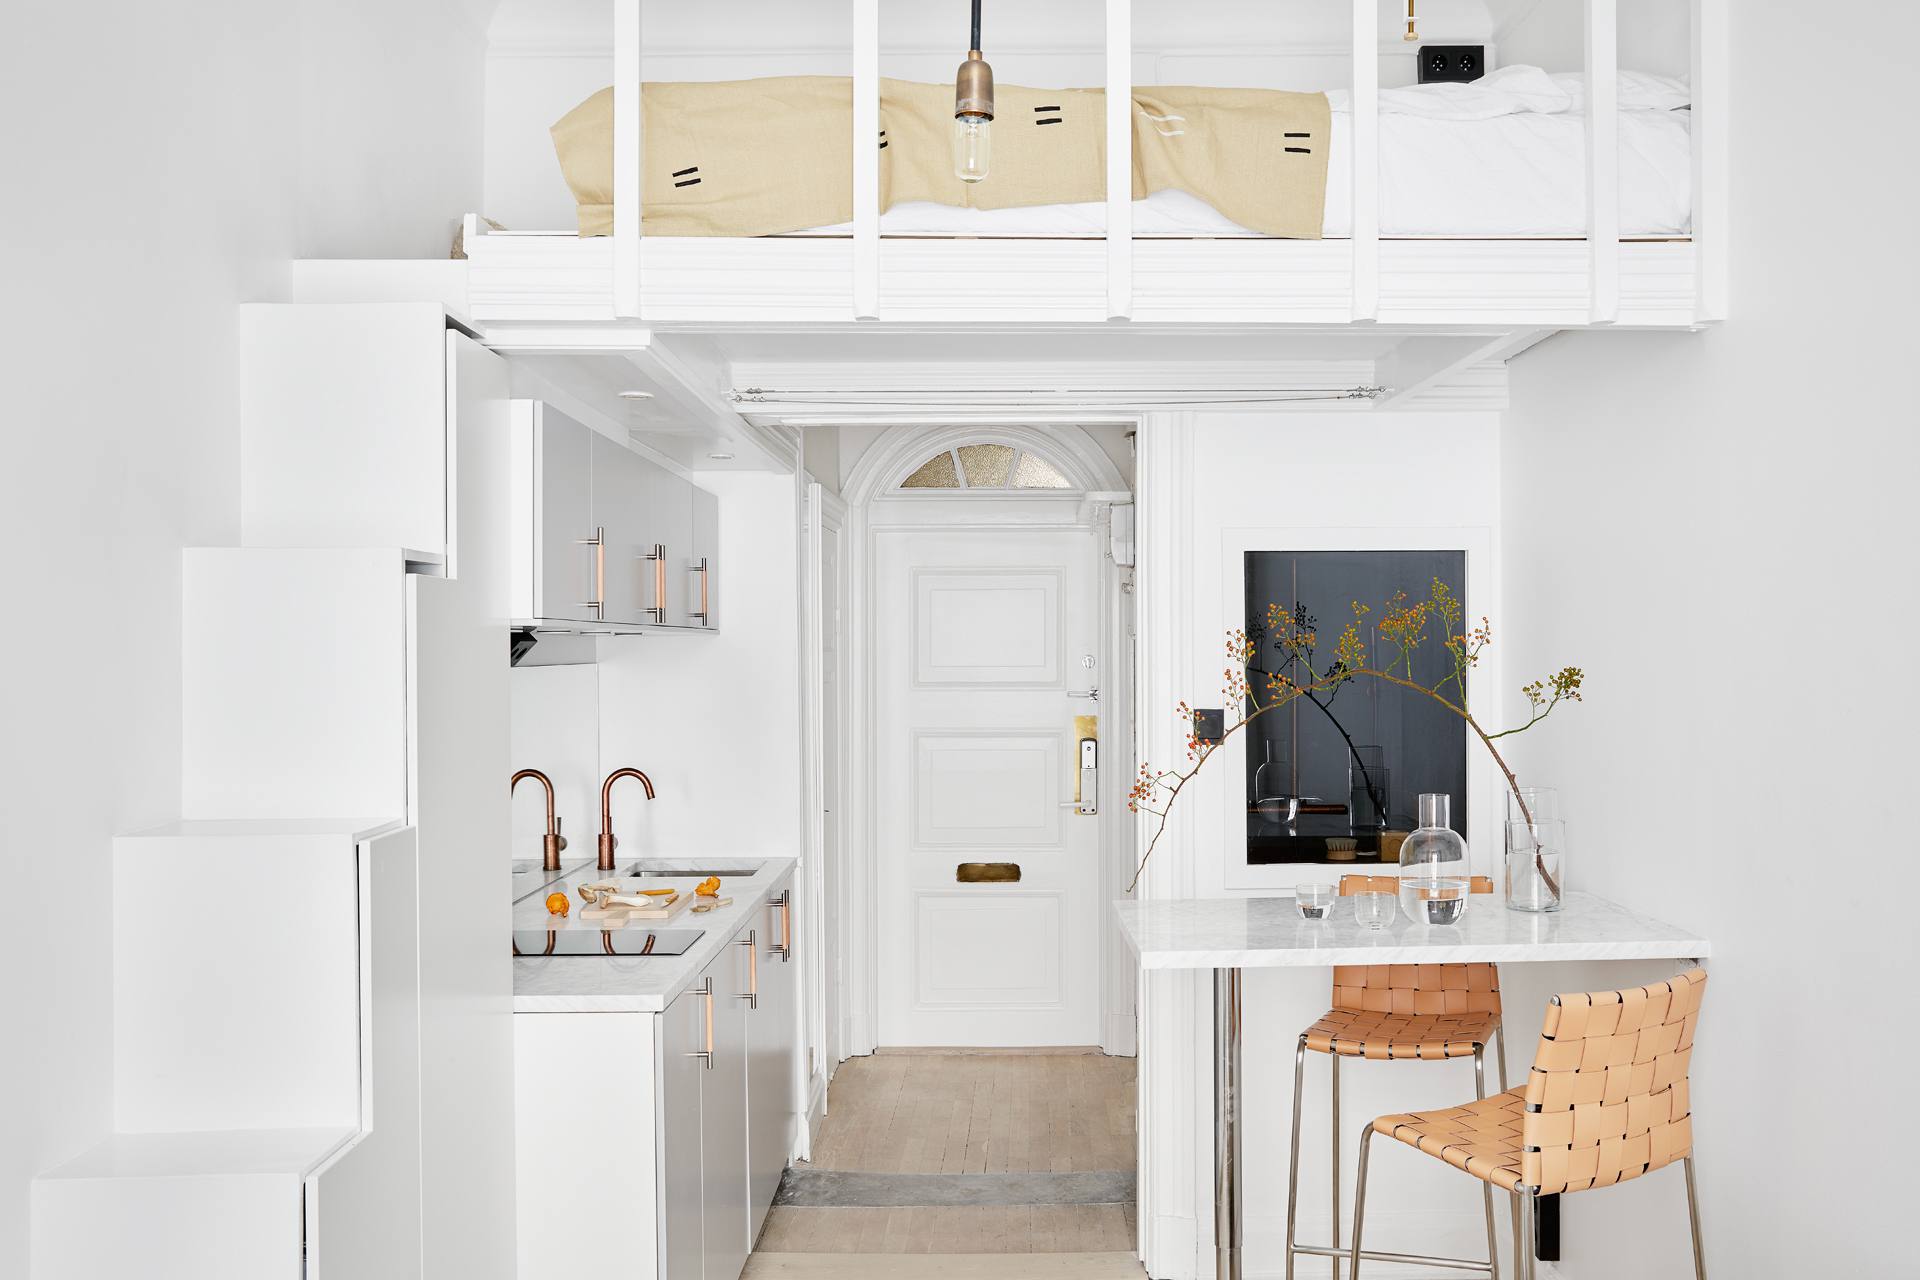 Căn hộ studio nhỏ xinh với gam màu trắng thanh lịch theo phong cách Scandinavian. Khu vực phòng ngủ được bố trí trên gác lửng với những bậc thang tích hợp đồng thời tủ lưu trữ tiện lợi cho nhà luôn gọn gàng.